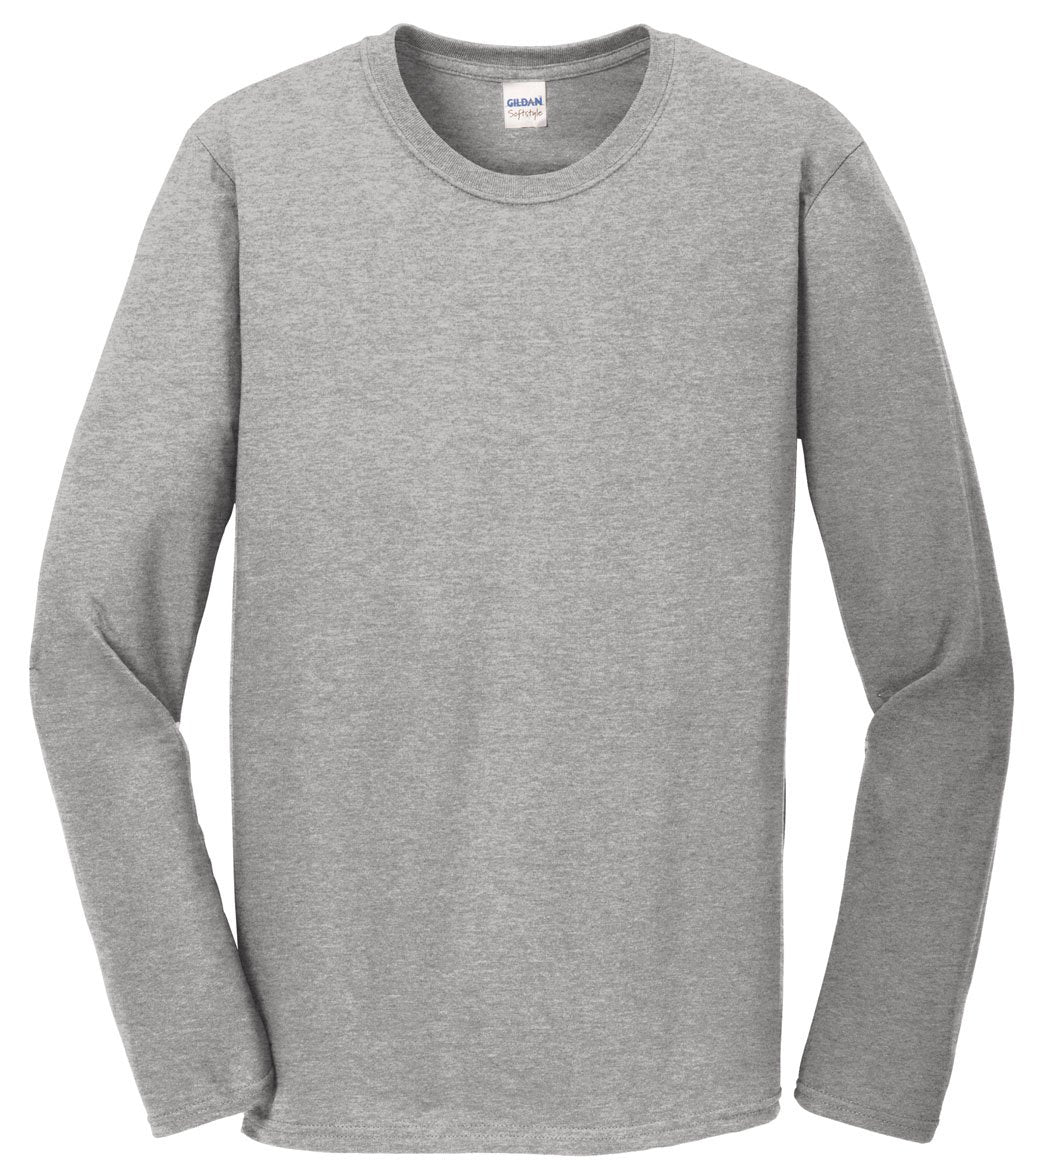 SwimOutlet Unisex Cotton Long Sleeve T-Shirt